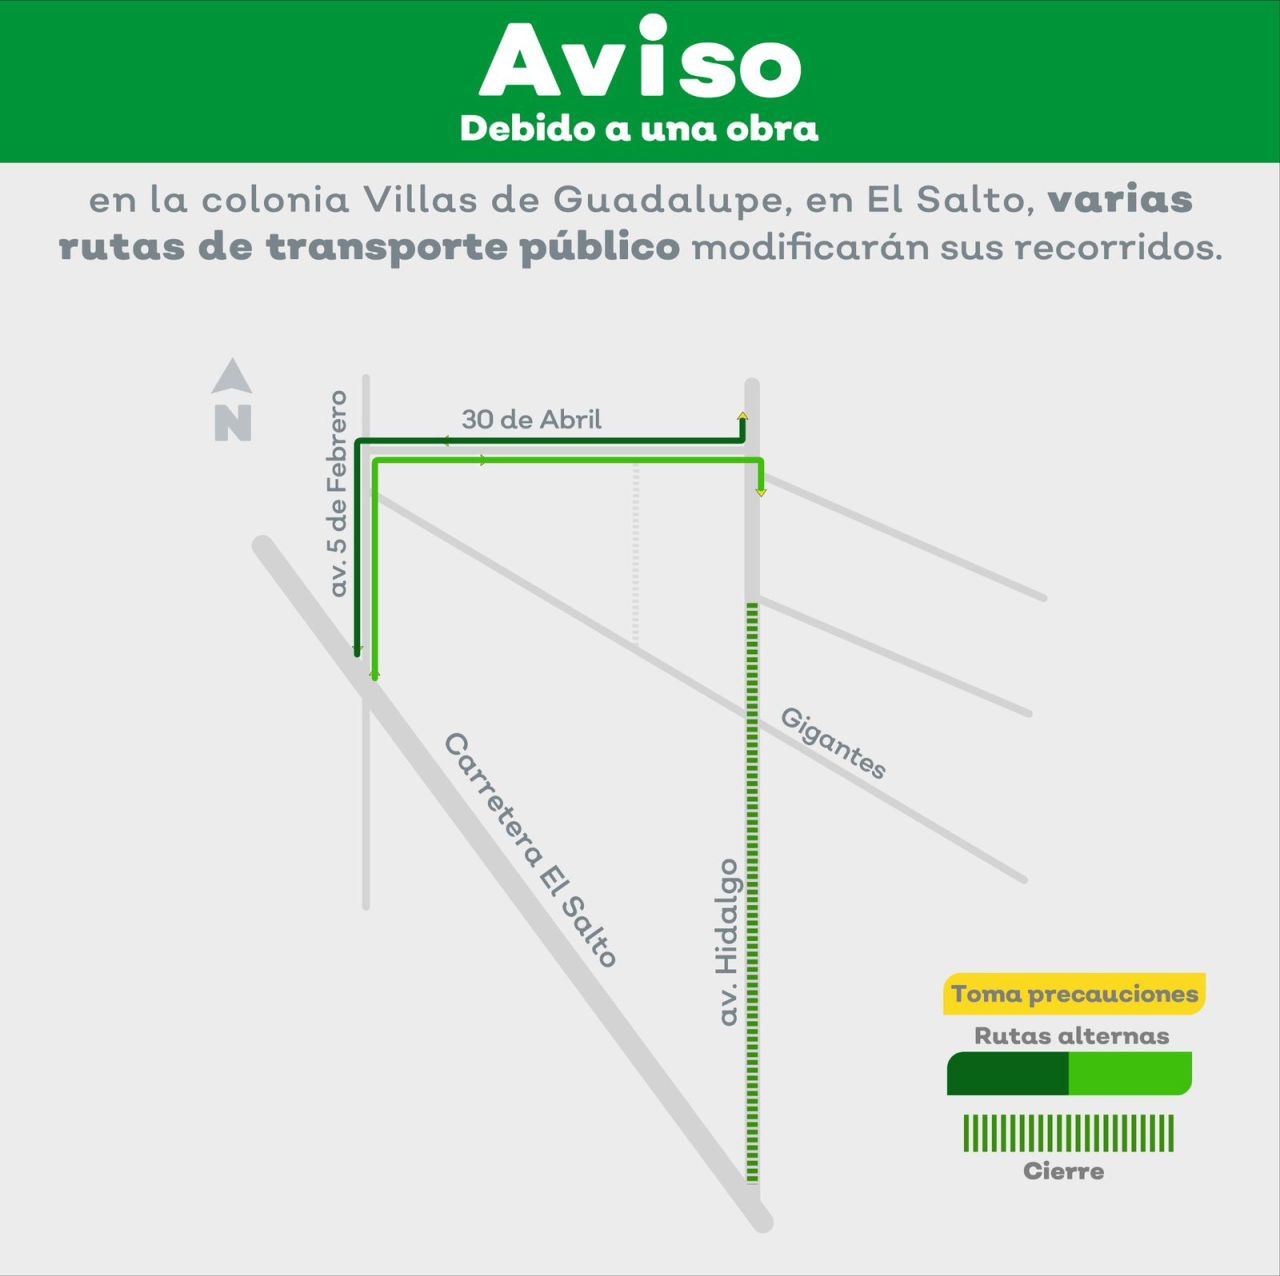 Debido a una obra de rehabilitación, algunas rutas de transporte público modificarán su derrotero en El Salto